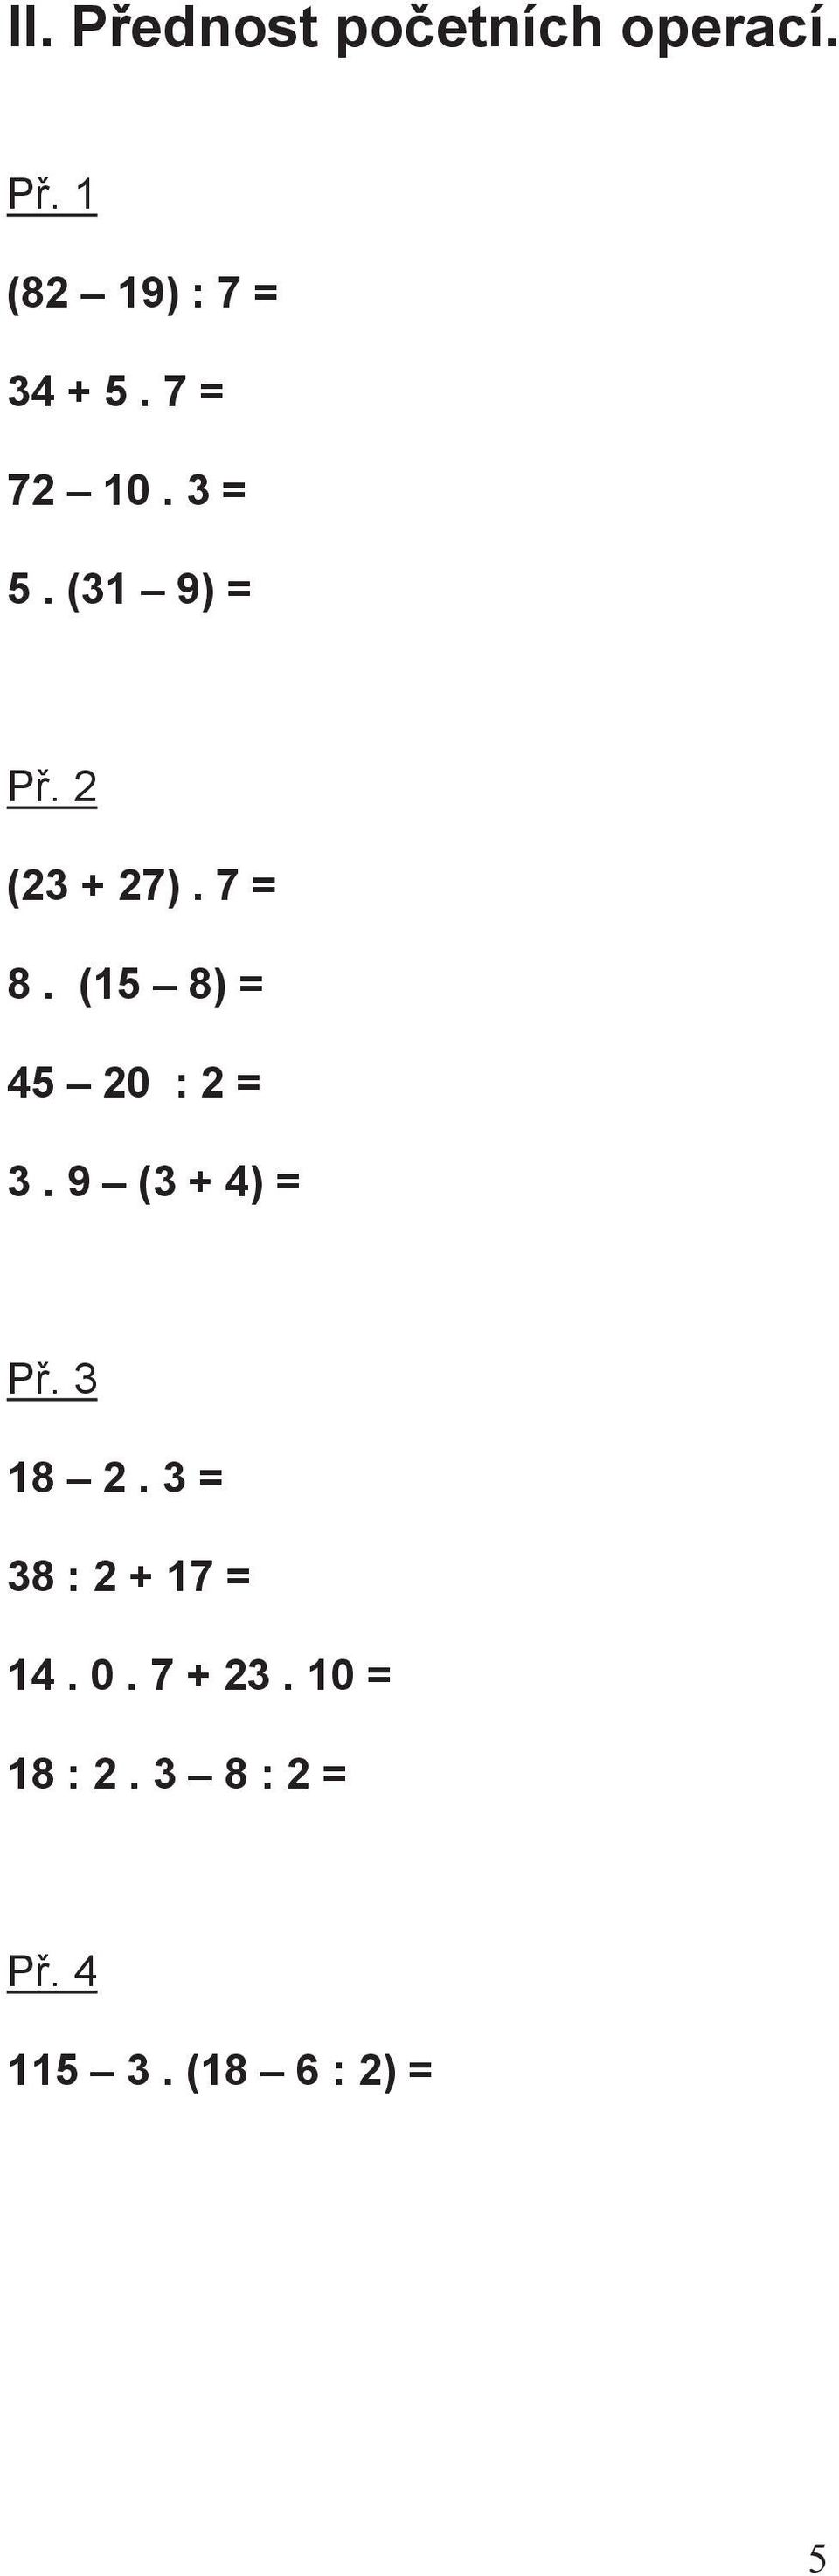 (15 8) = 45 20 : 2 = 3. 9 (3 + 4) = P. 3 18 2.